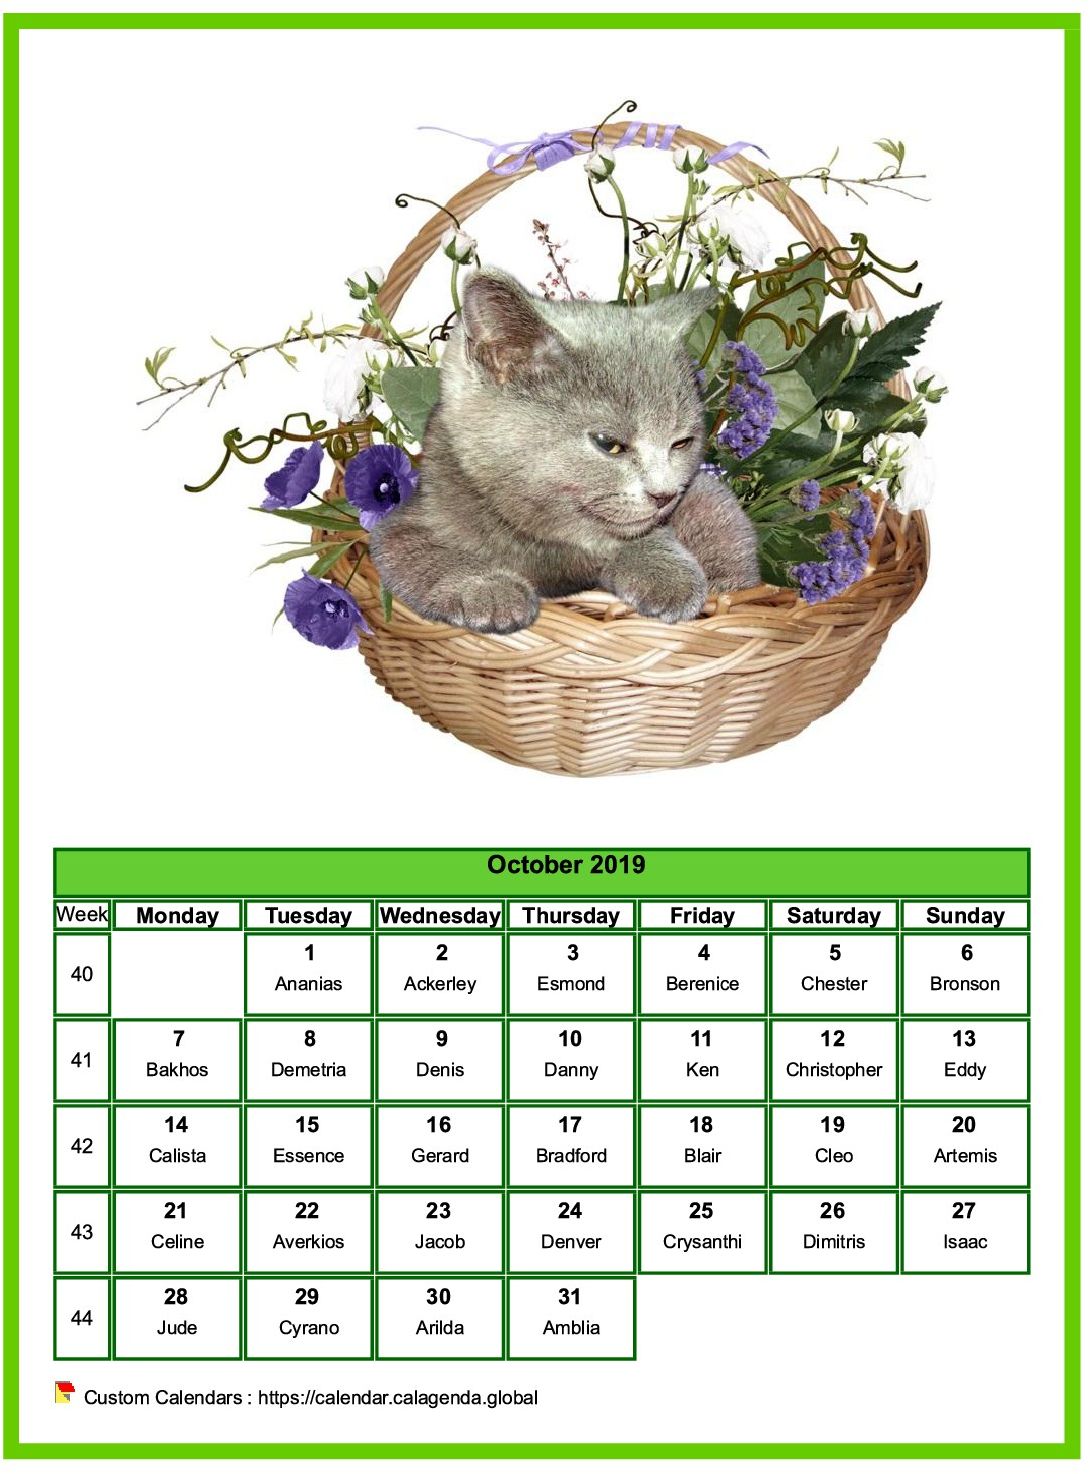 Calendar october 2019 cats